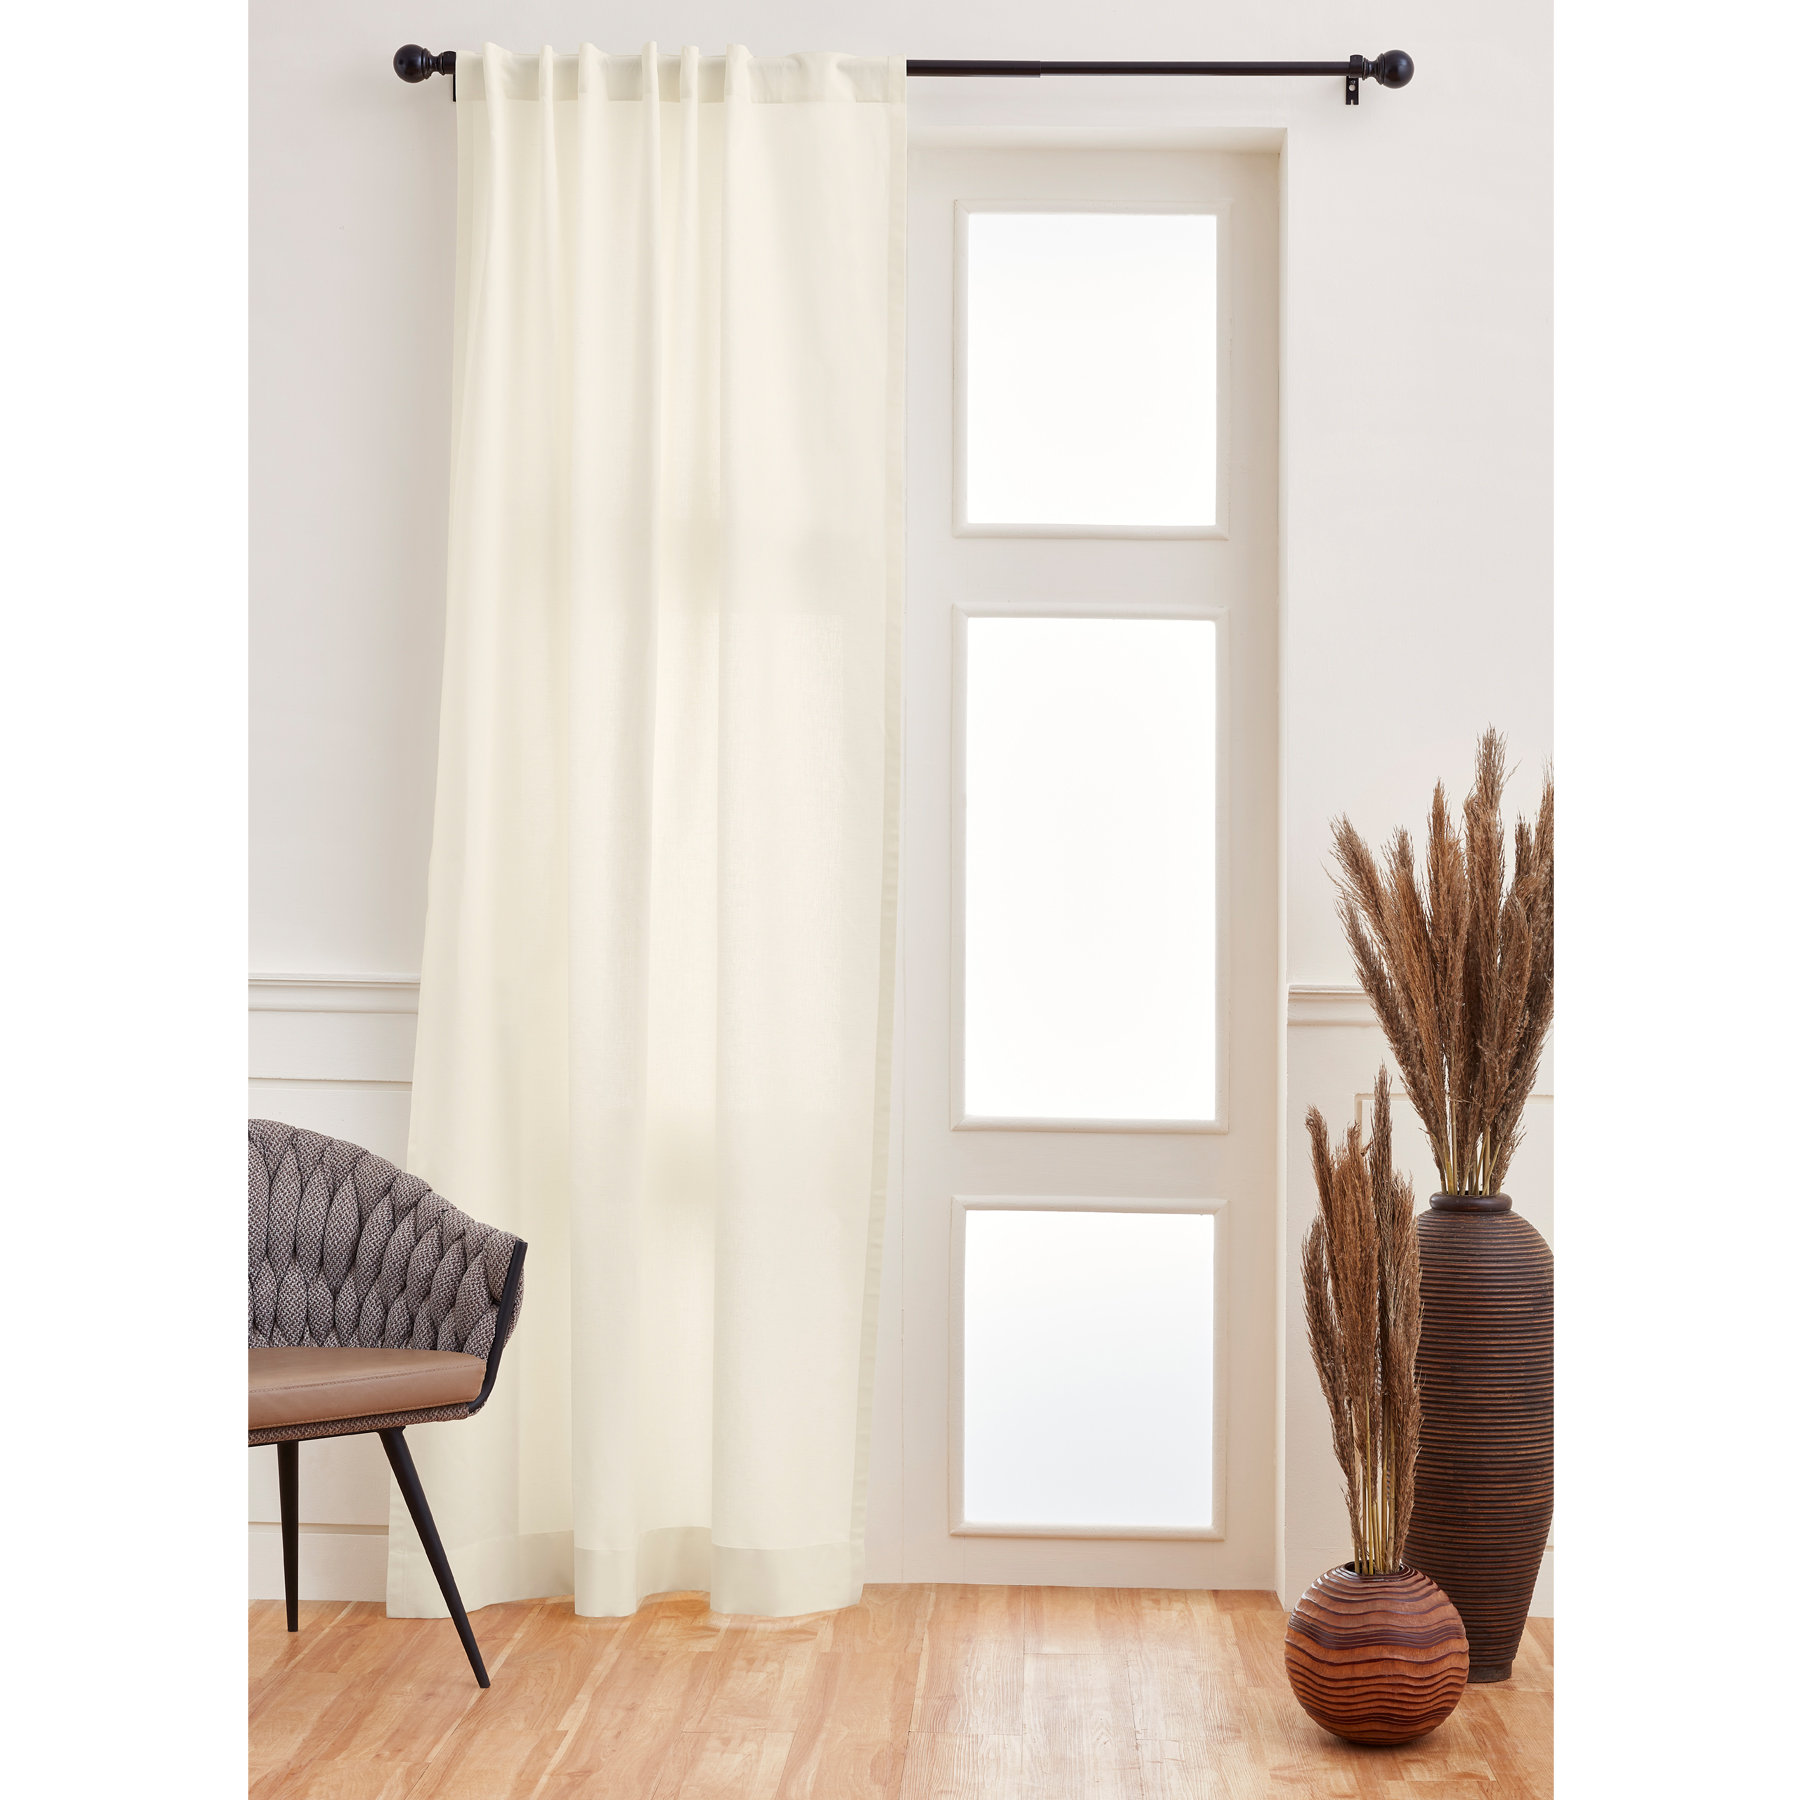 Cotton Linen Curtain Solino Home Curtain Color: Linen, Size per Panel: 52 W x 84 L